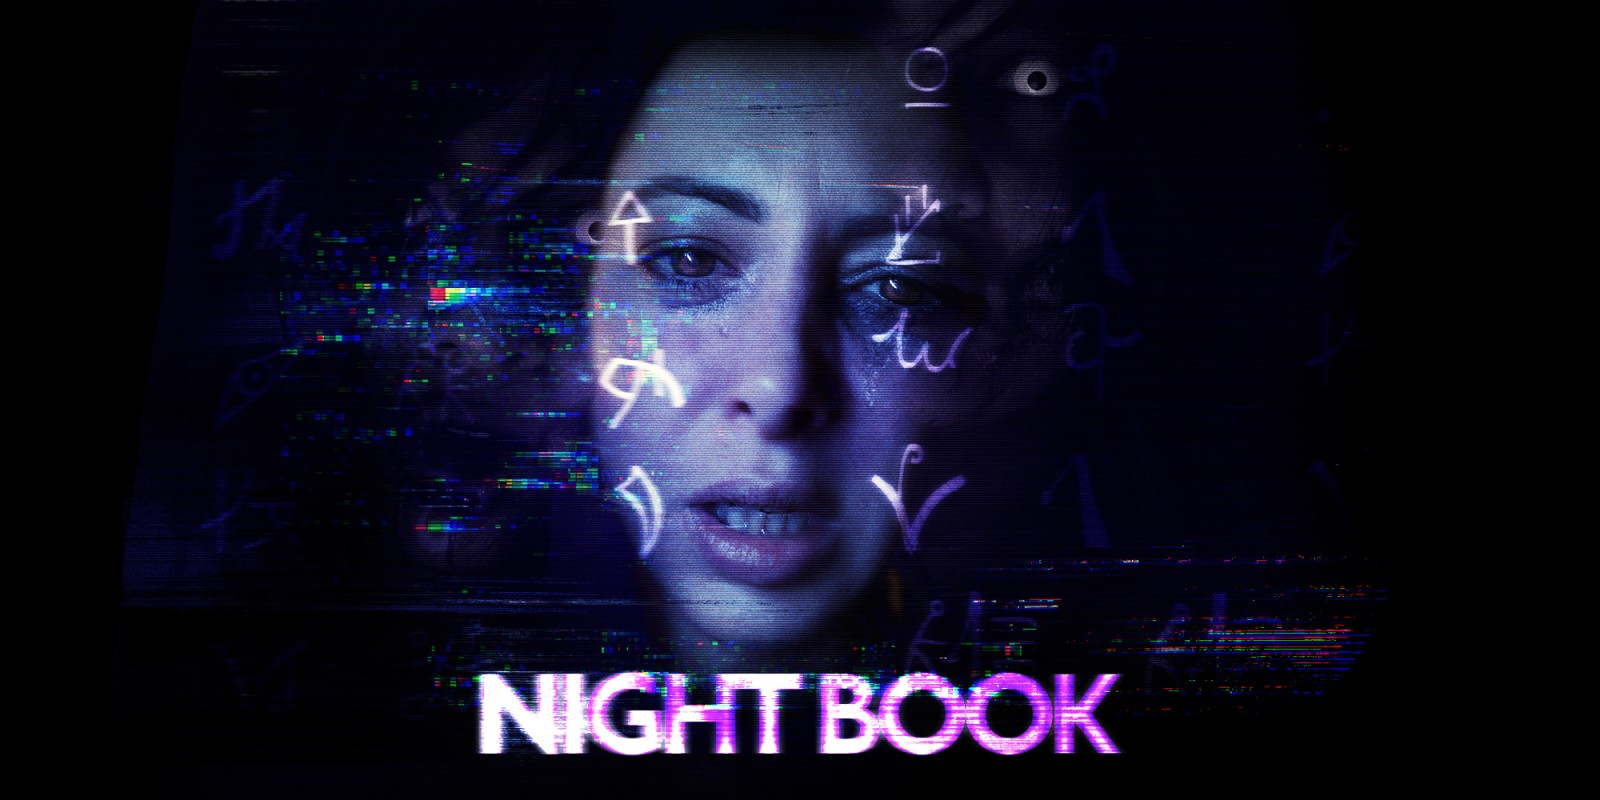 enter night book